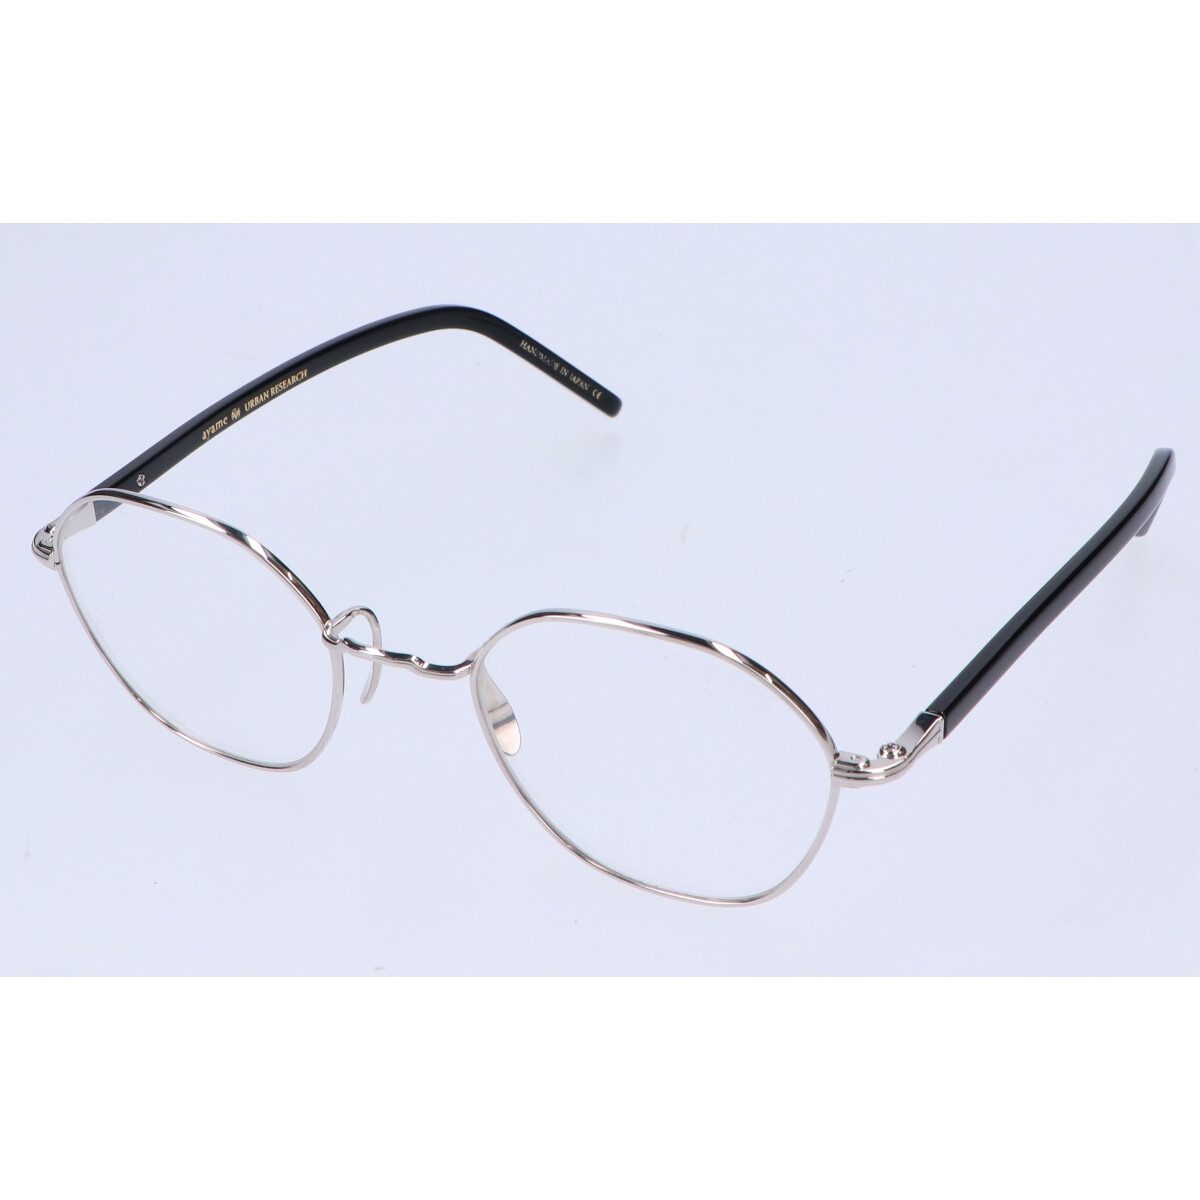 アヤメのx アーバンリサーチ HEX ヘックス 六角形メガネフレーム 眼鏡の買取実績です。